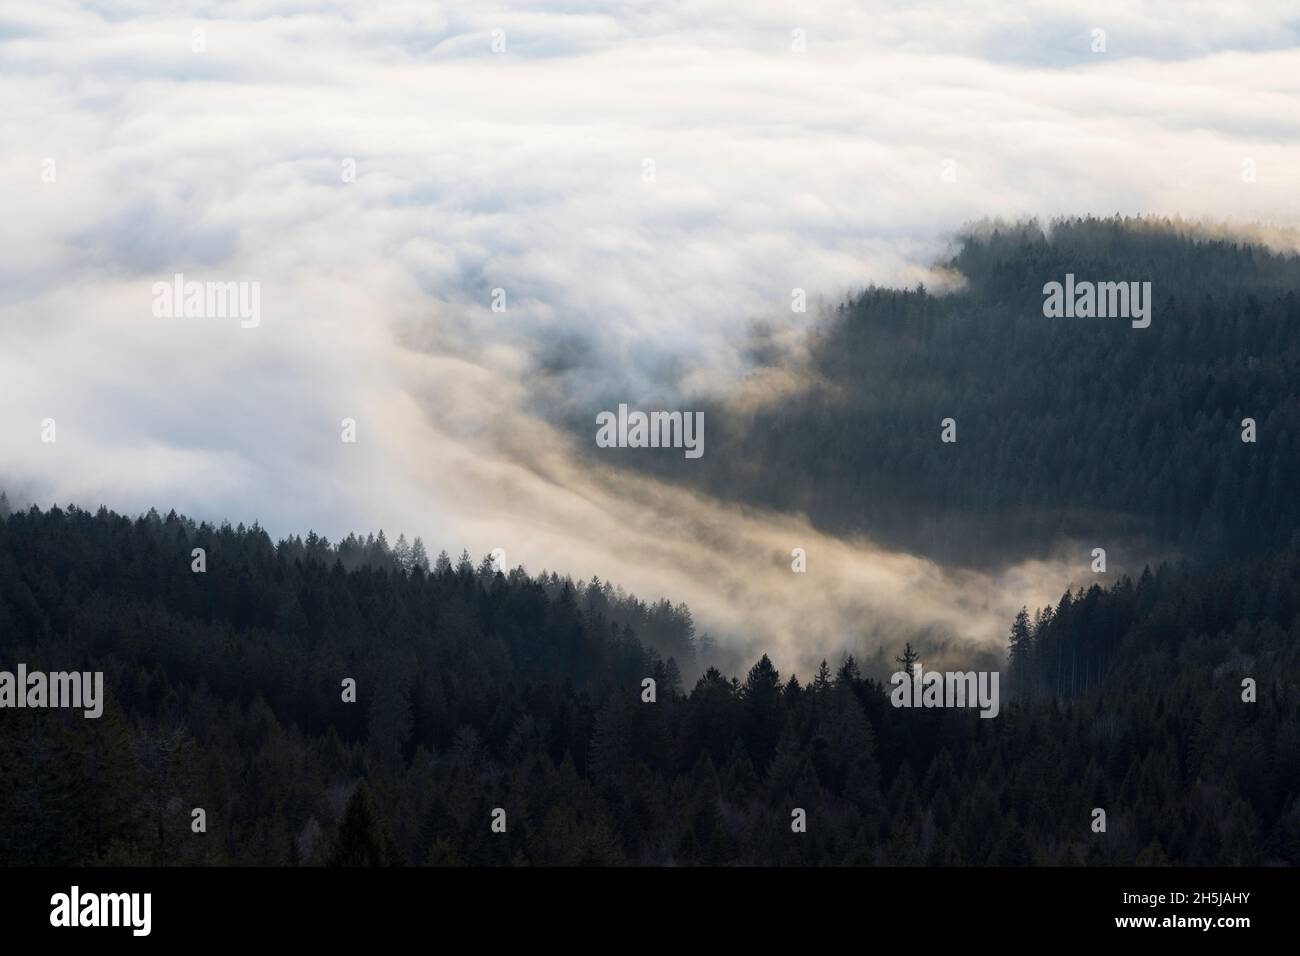 Nebel ueber Baeumen, Fog over trees Stock Photo